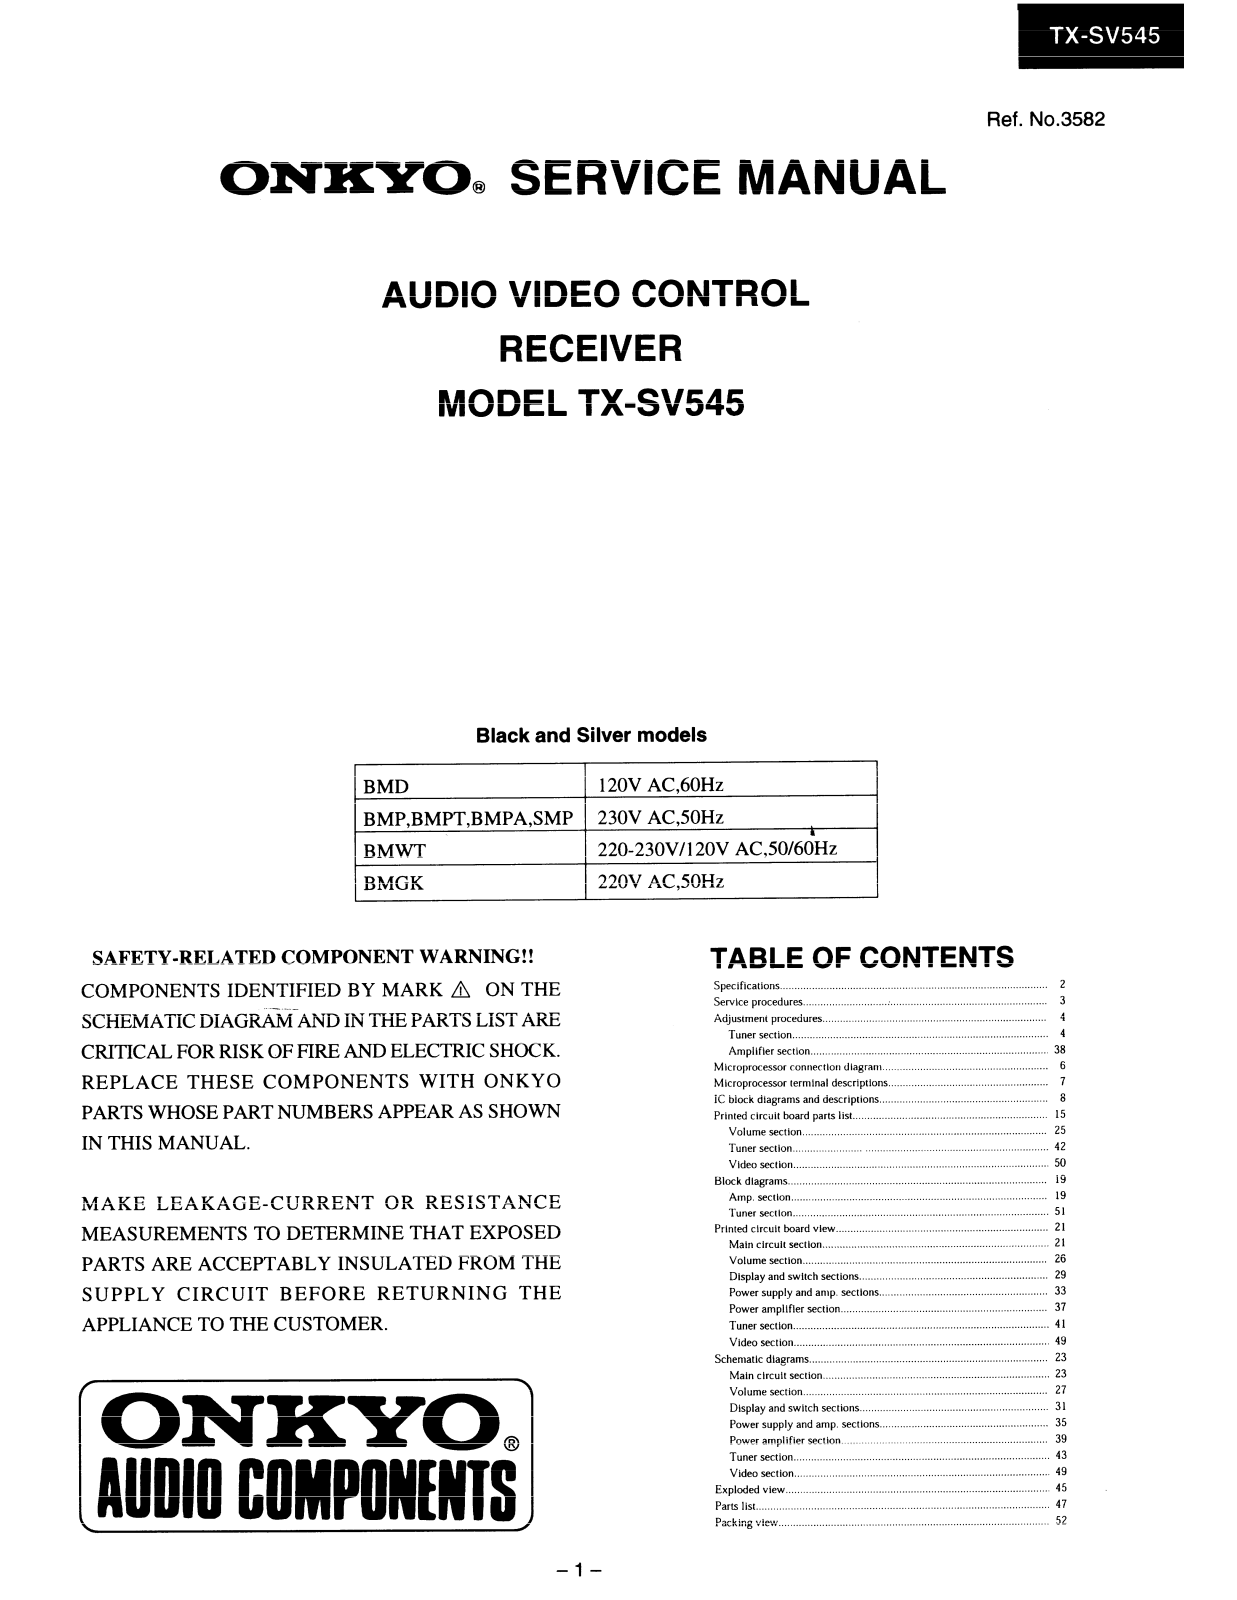 Onkyo TXSV-545 Service Manual